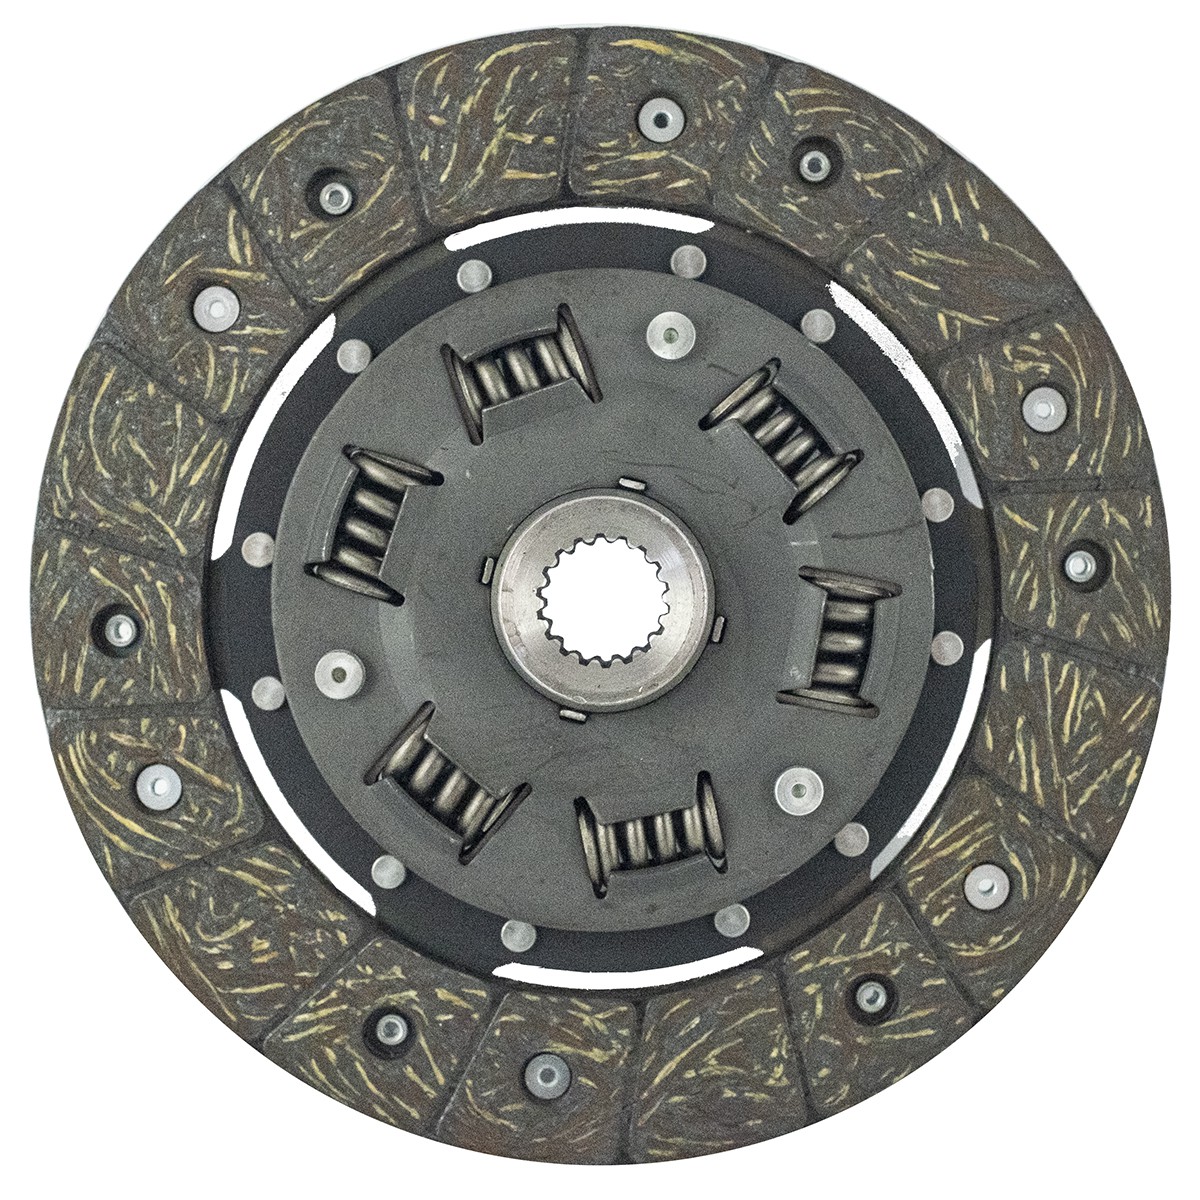 Clutch disc Iseki 18T / 184 mm / Iseki TX1510 / TU1500 / TU1400 / TM17 / Shibaura P